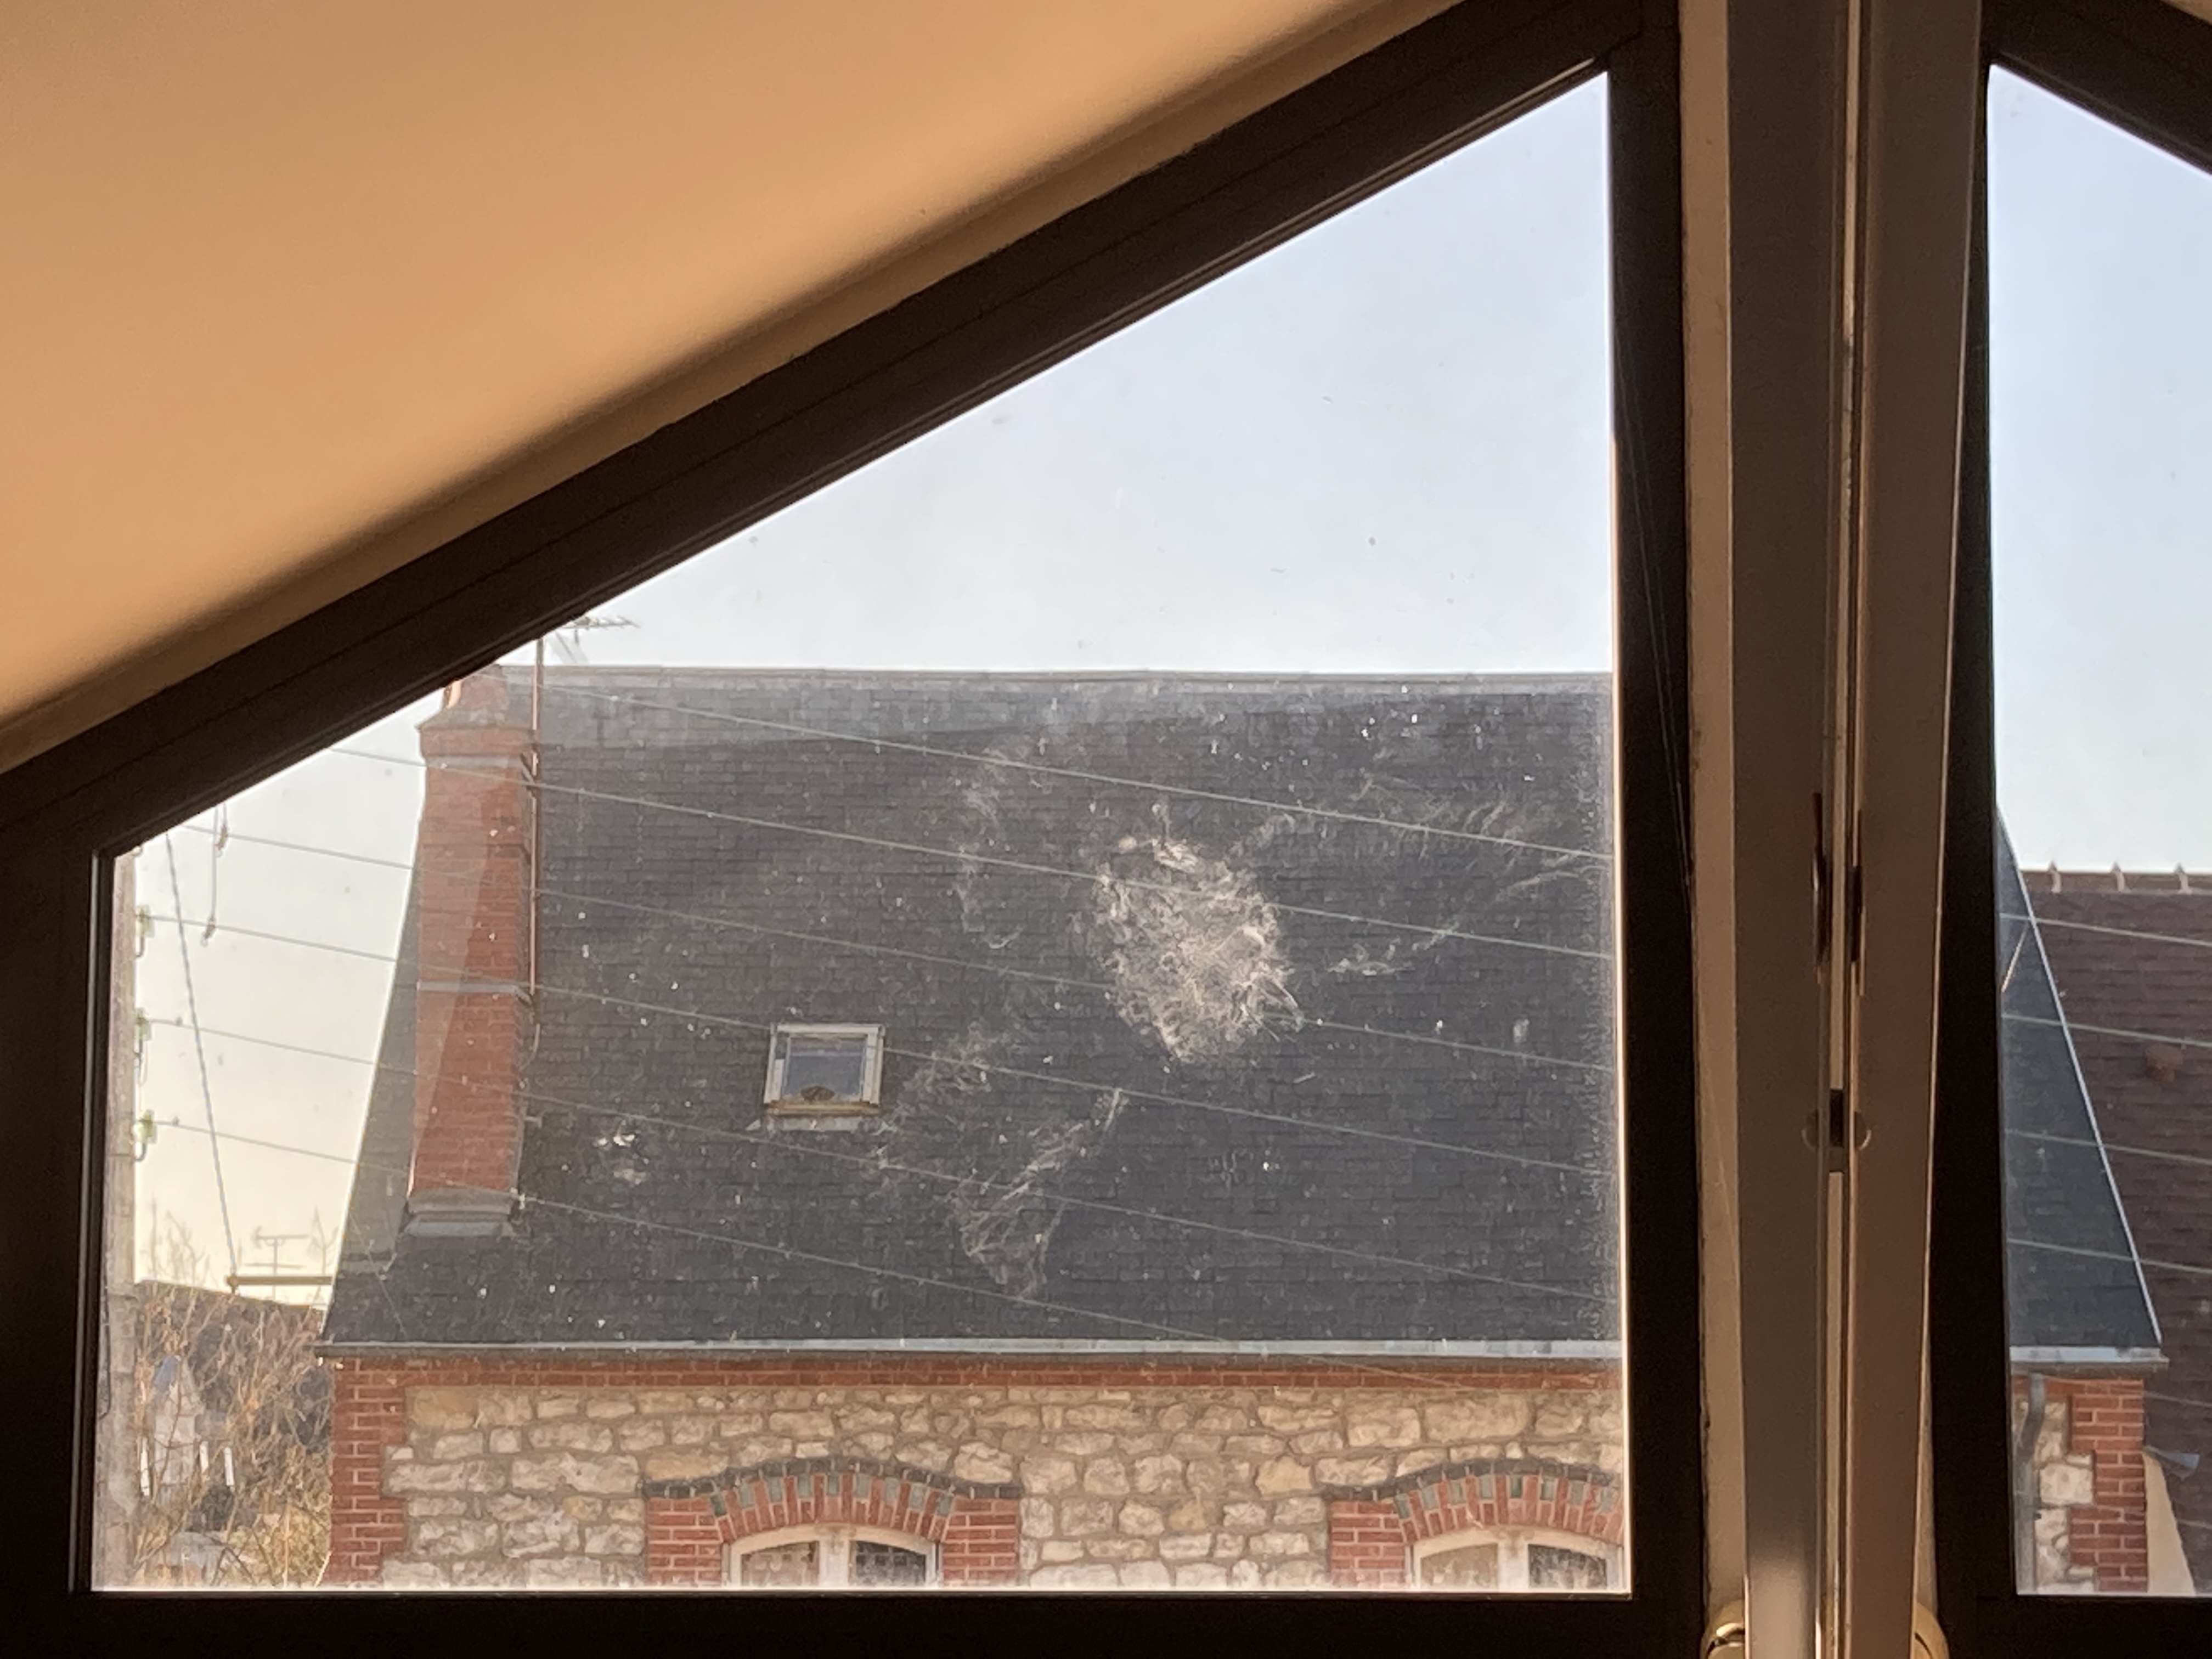 trace d'un pigeon écrasé sur la vitre